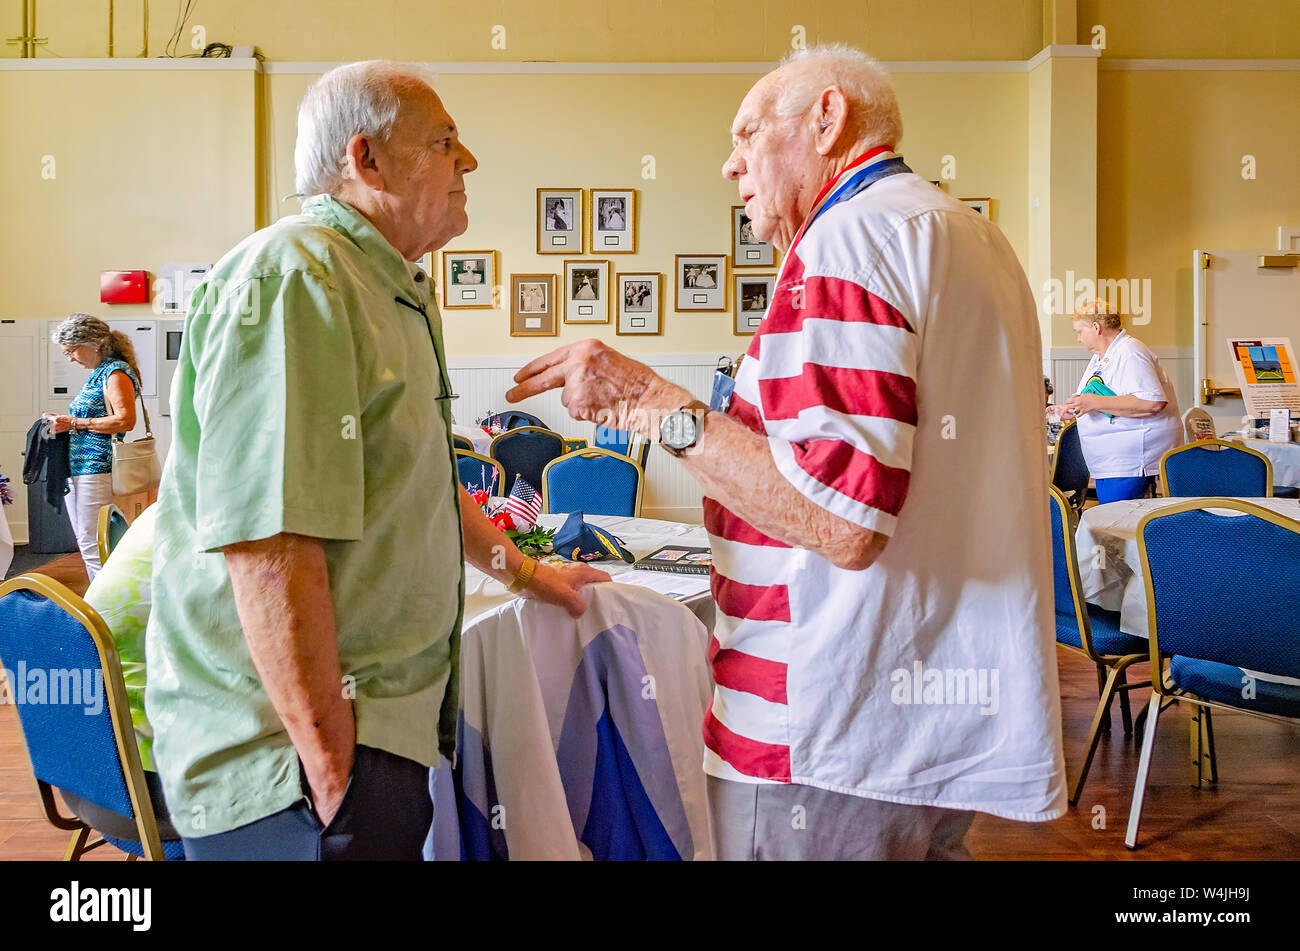 Mitglieder der amerikanischen Legion Sprechen während der Post 3 open house, Juli 21, 2019 in Mobile, Alabama. Stockfoto